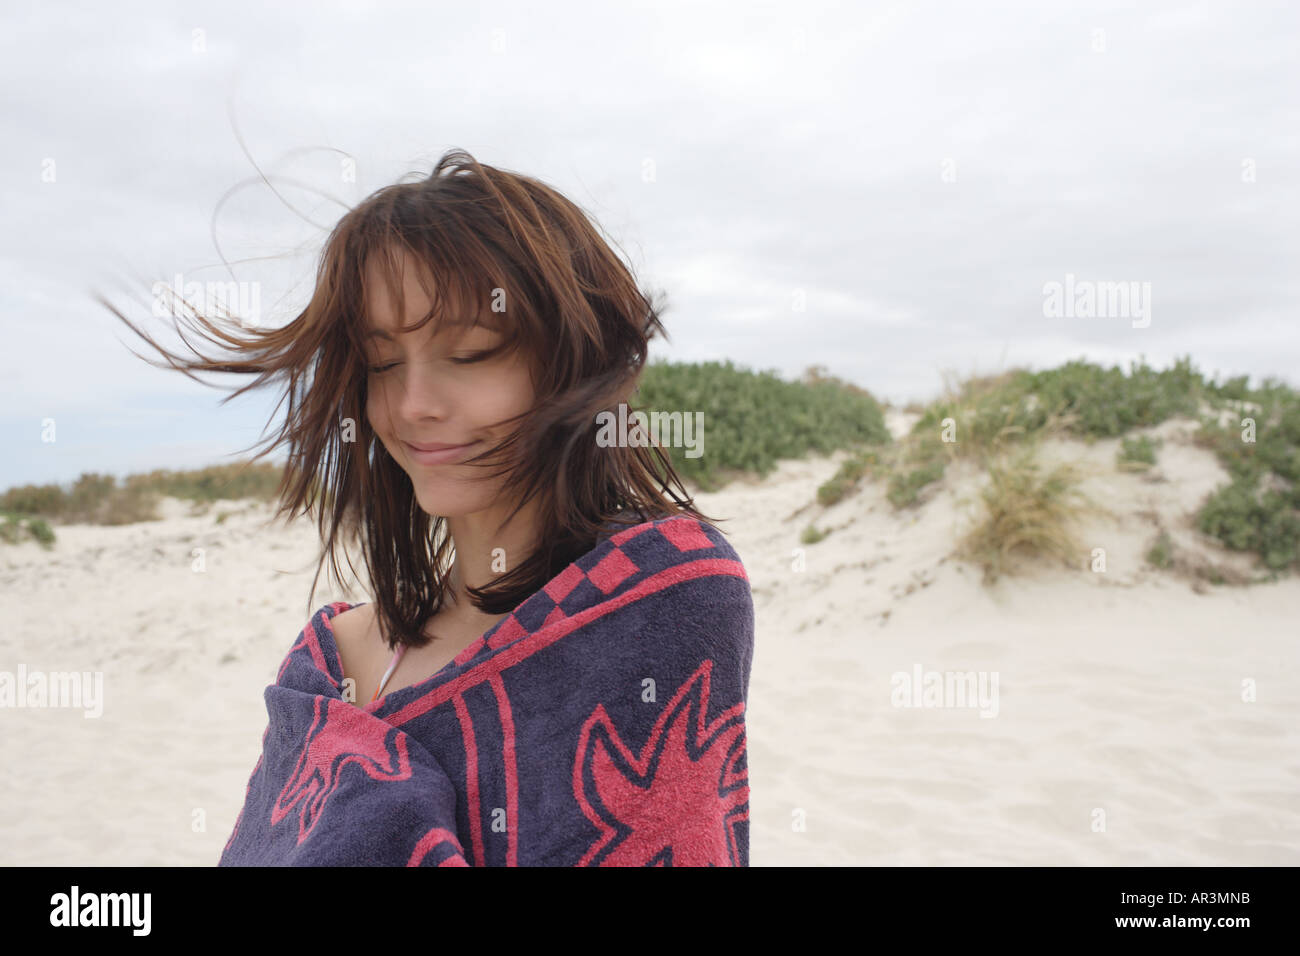 Junge Frau am Strand in Strandtuch, Wind weht Haar gewickelt Stockfoto